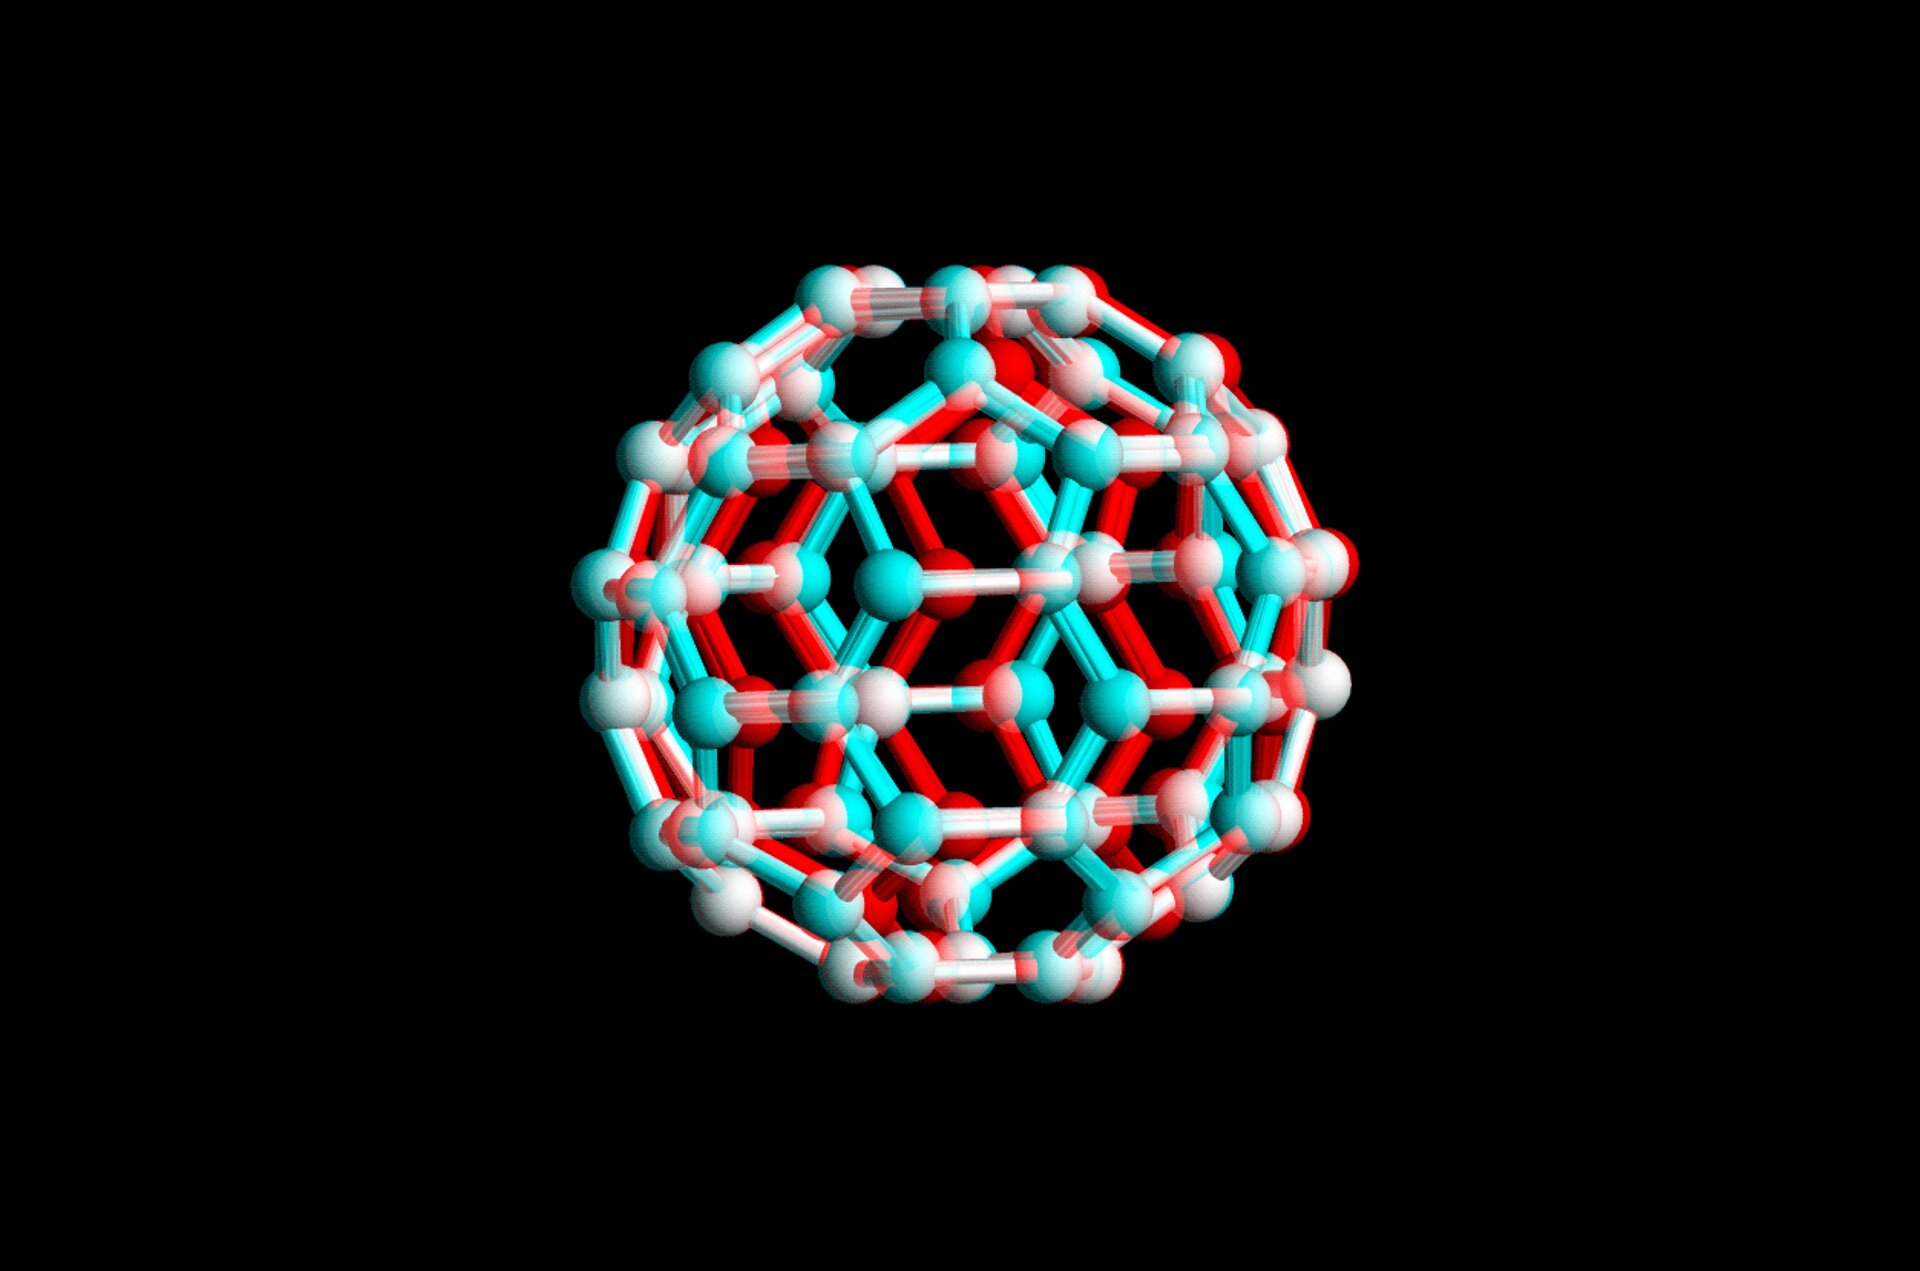 Zdjęcie przedstawia komputerowy model cząsteczki fulerenu w postaci kulek symbolizujących atomy połączonych słupkami  symbolizujących wiązania. Obrazek wykonany jest w technice stereograficznego 3D, dzięki czemu oglądany przez czerwono niebieskie okulary będzie wydawał się trójwymiarowy.